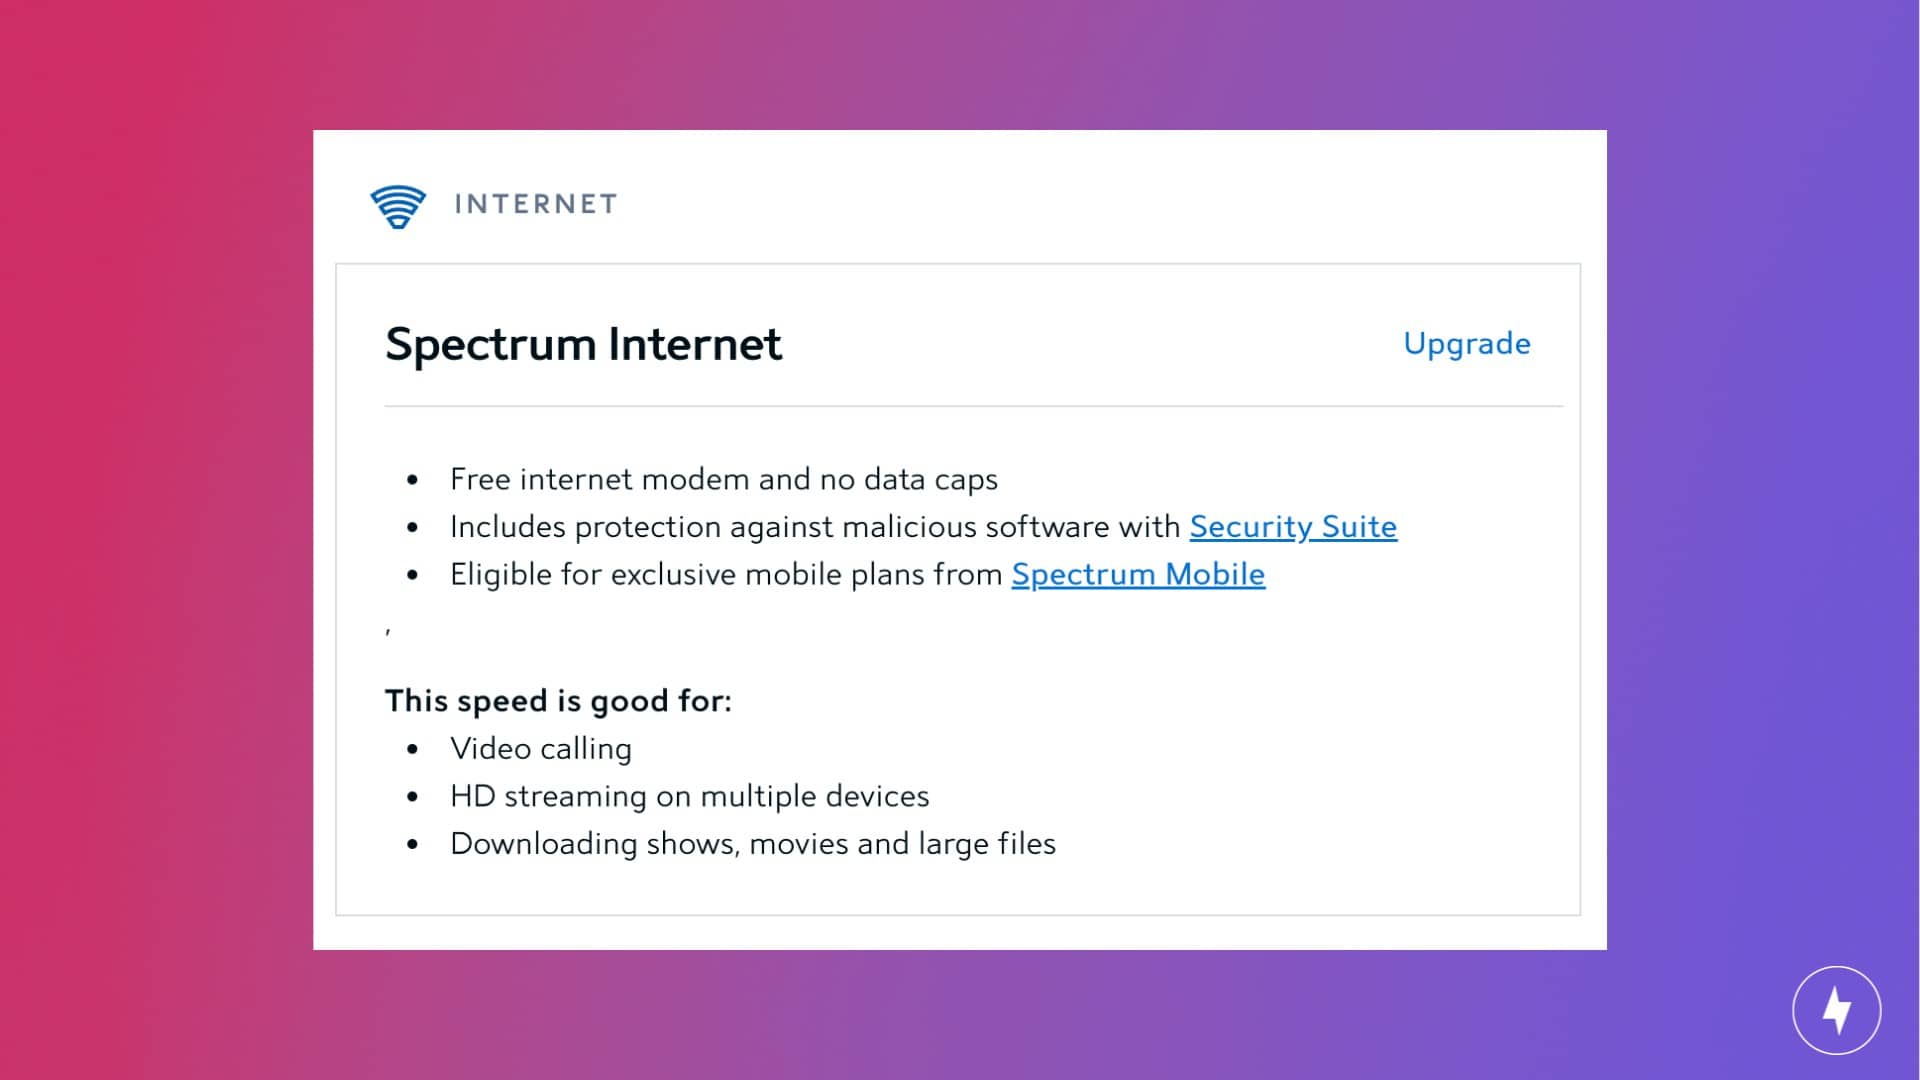 A screenshot of the details of a Spectrum Internet plan.